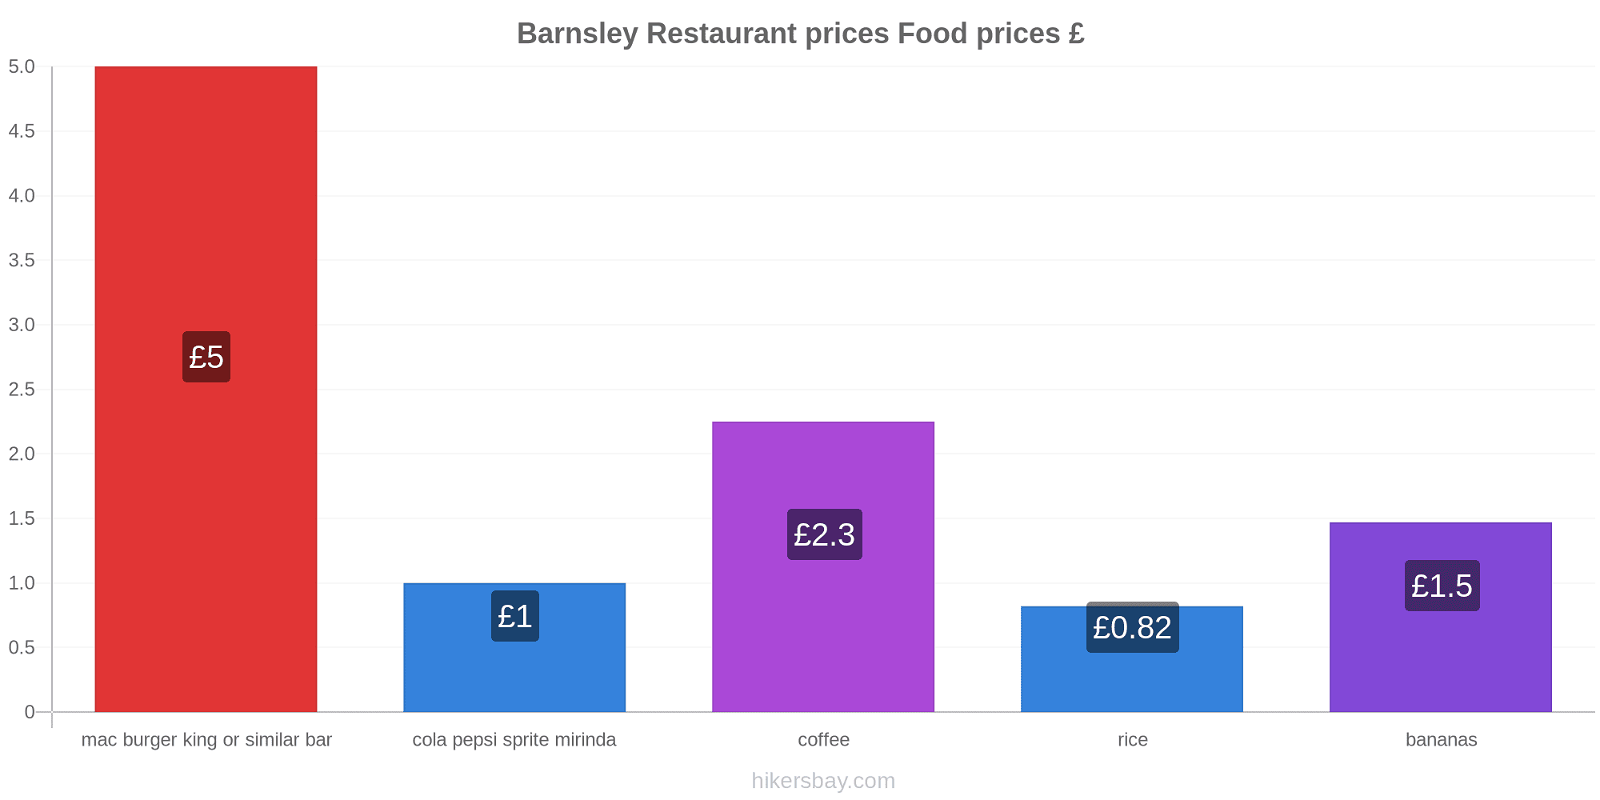 Barnsley price changes hikersbay.com